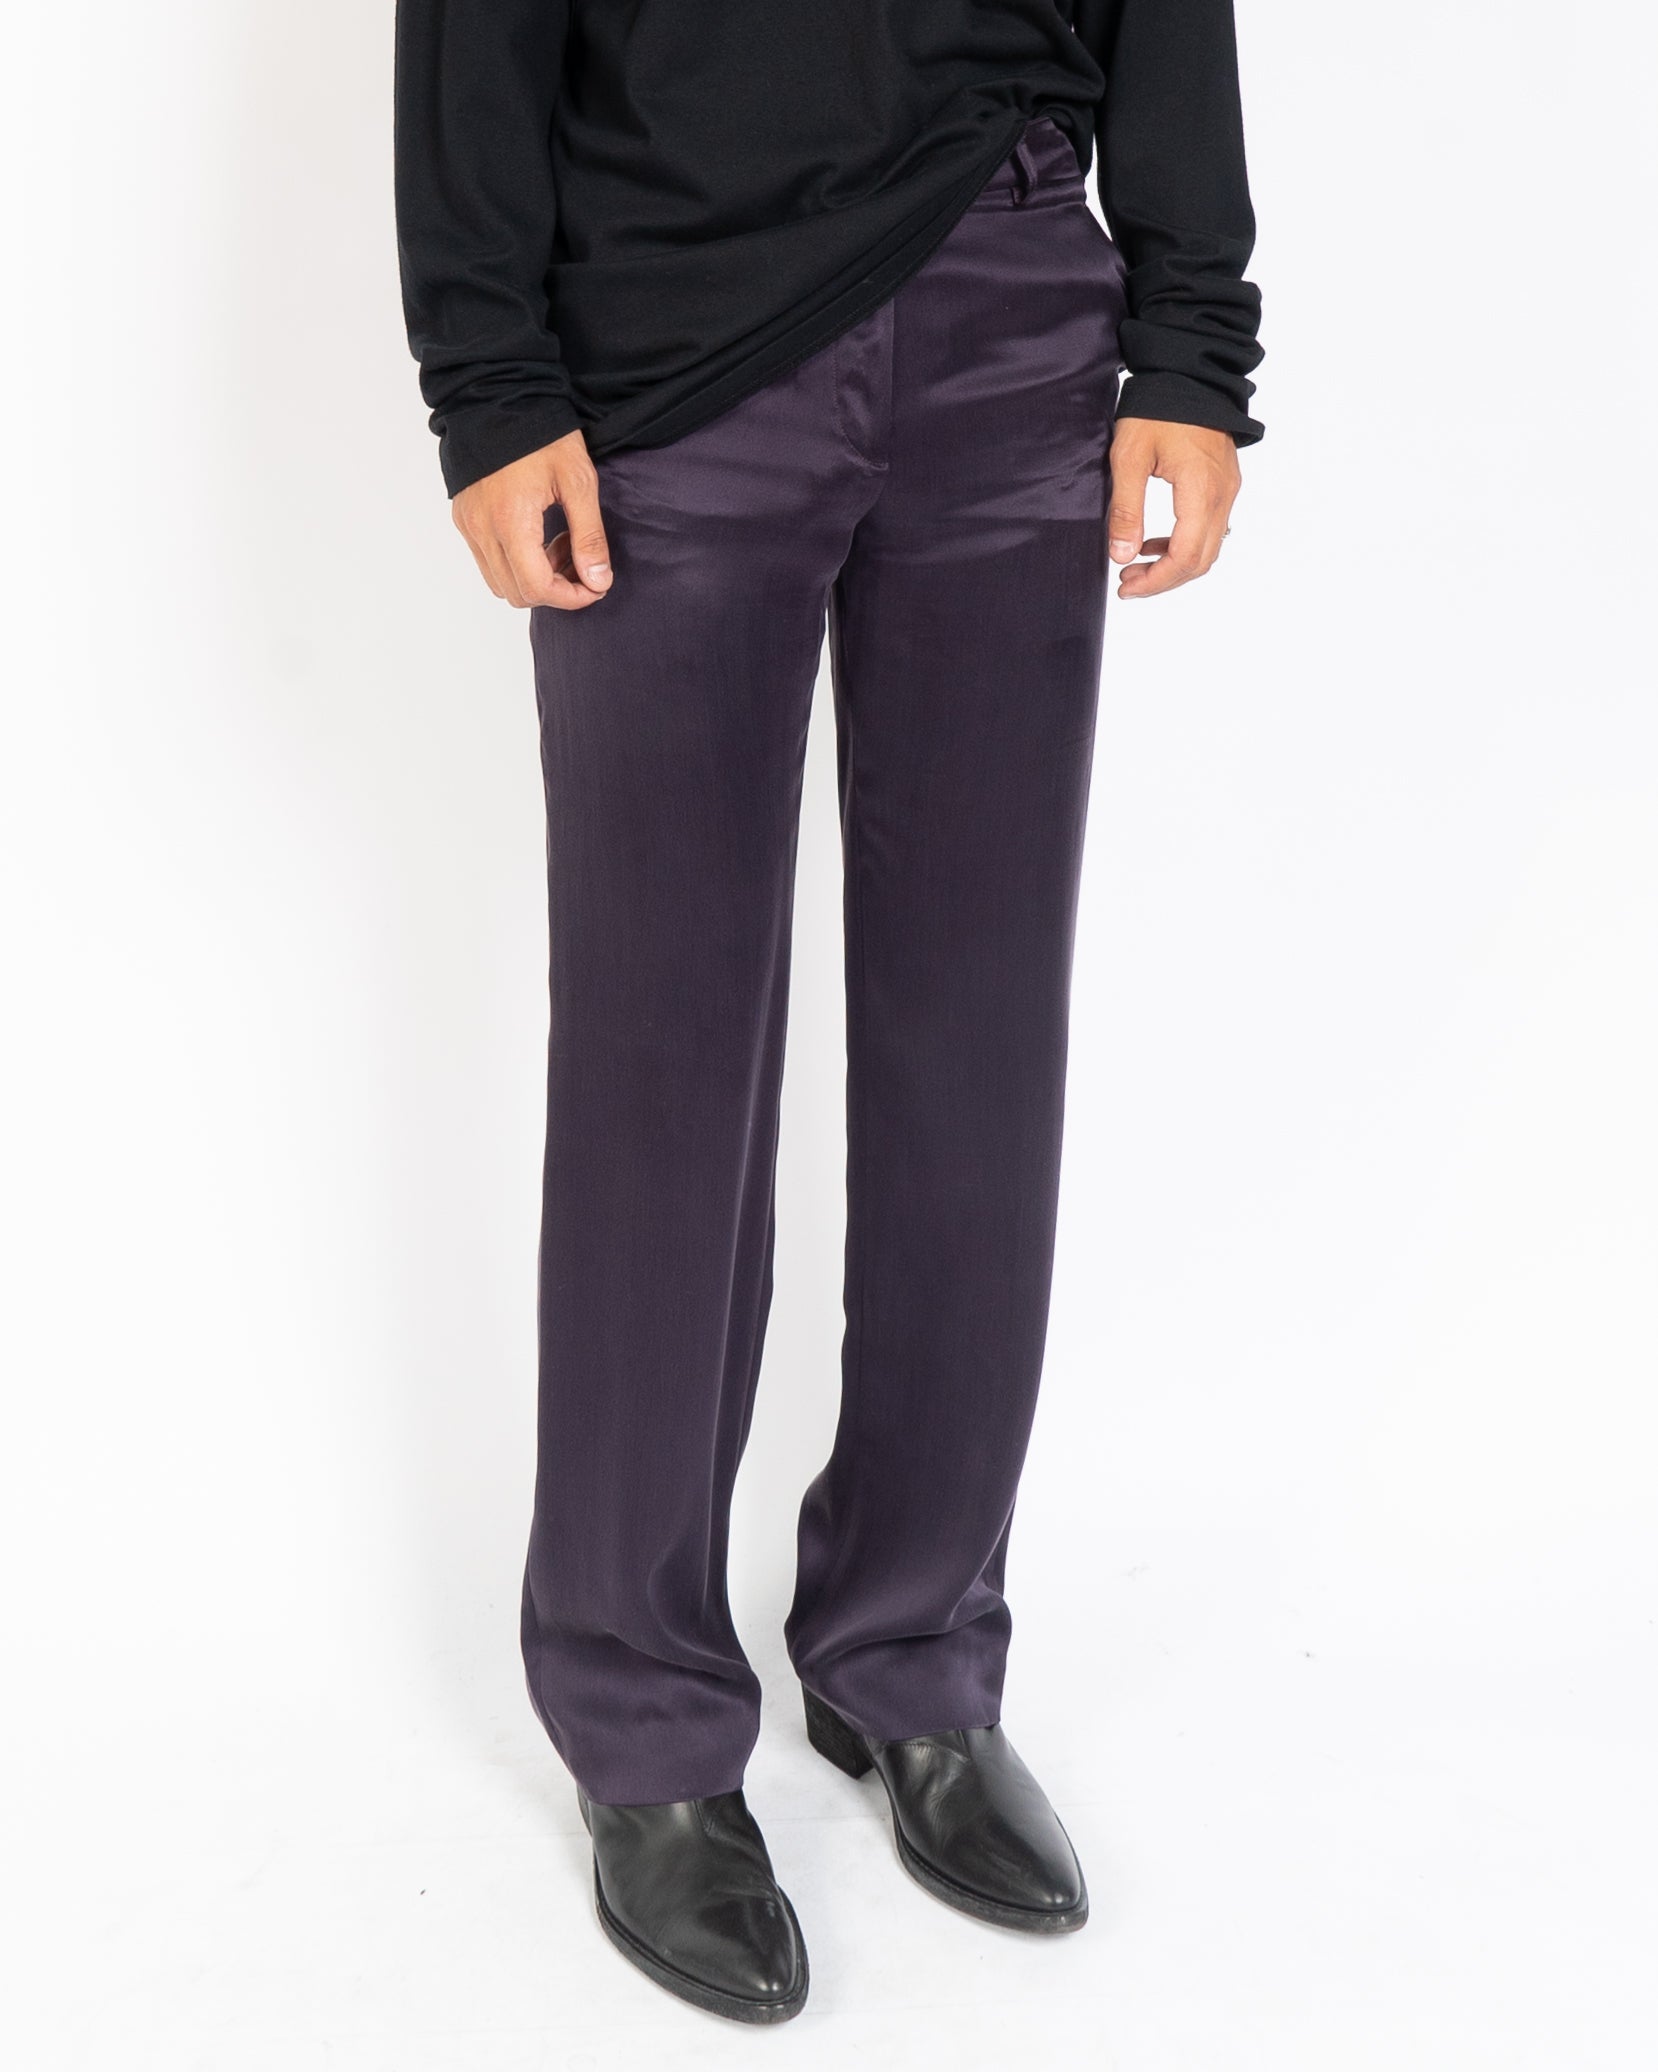 SS14 Purple Silk Trousers